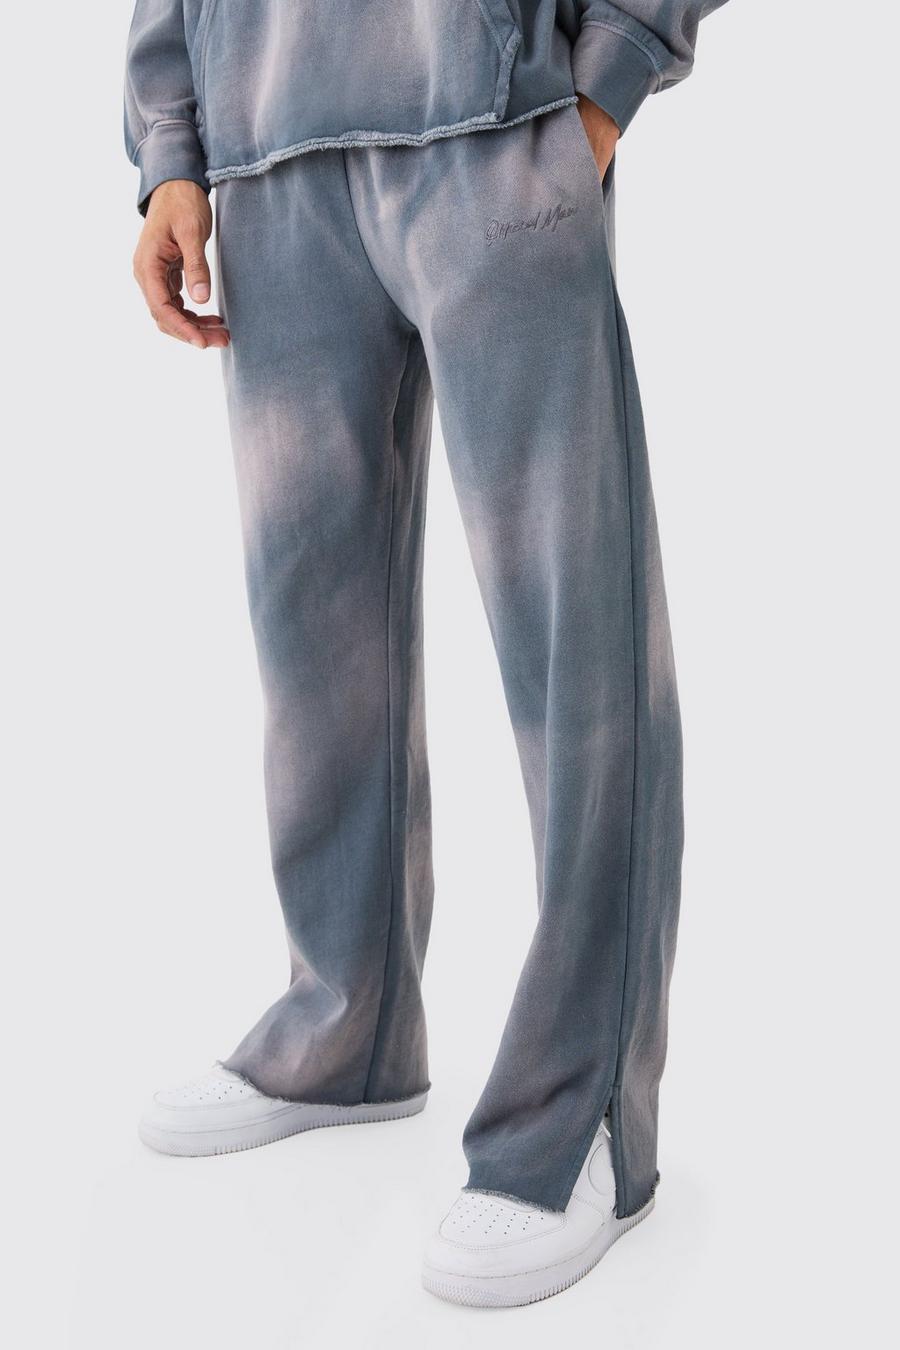 Pantaloni tuta oversize in lavaggio candeggiato con ricami Man e spacco sul fondo, Charcoal